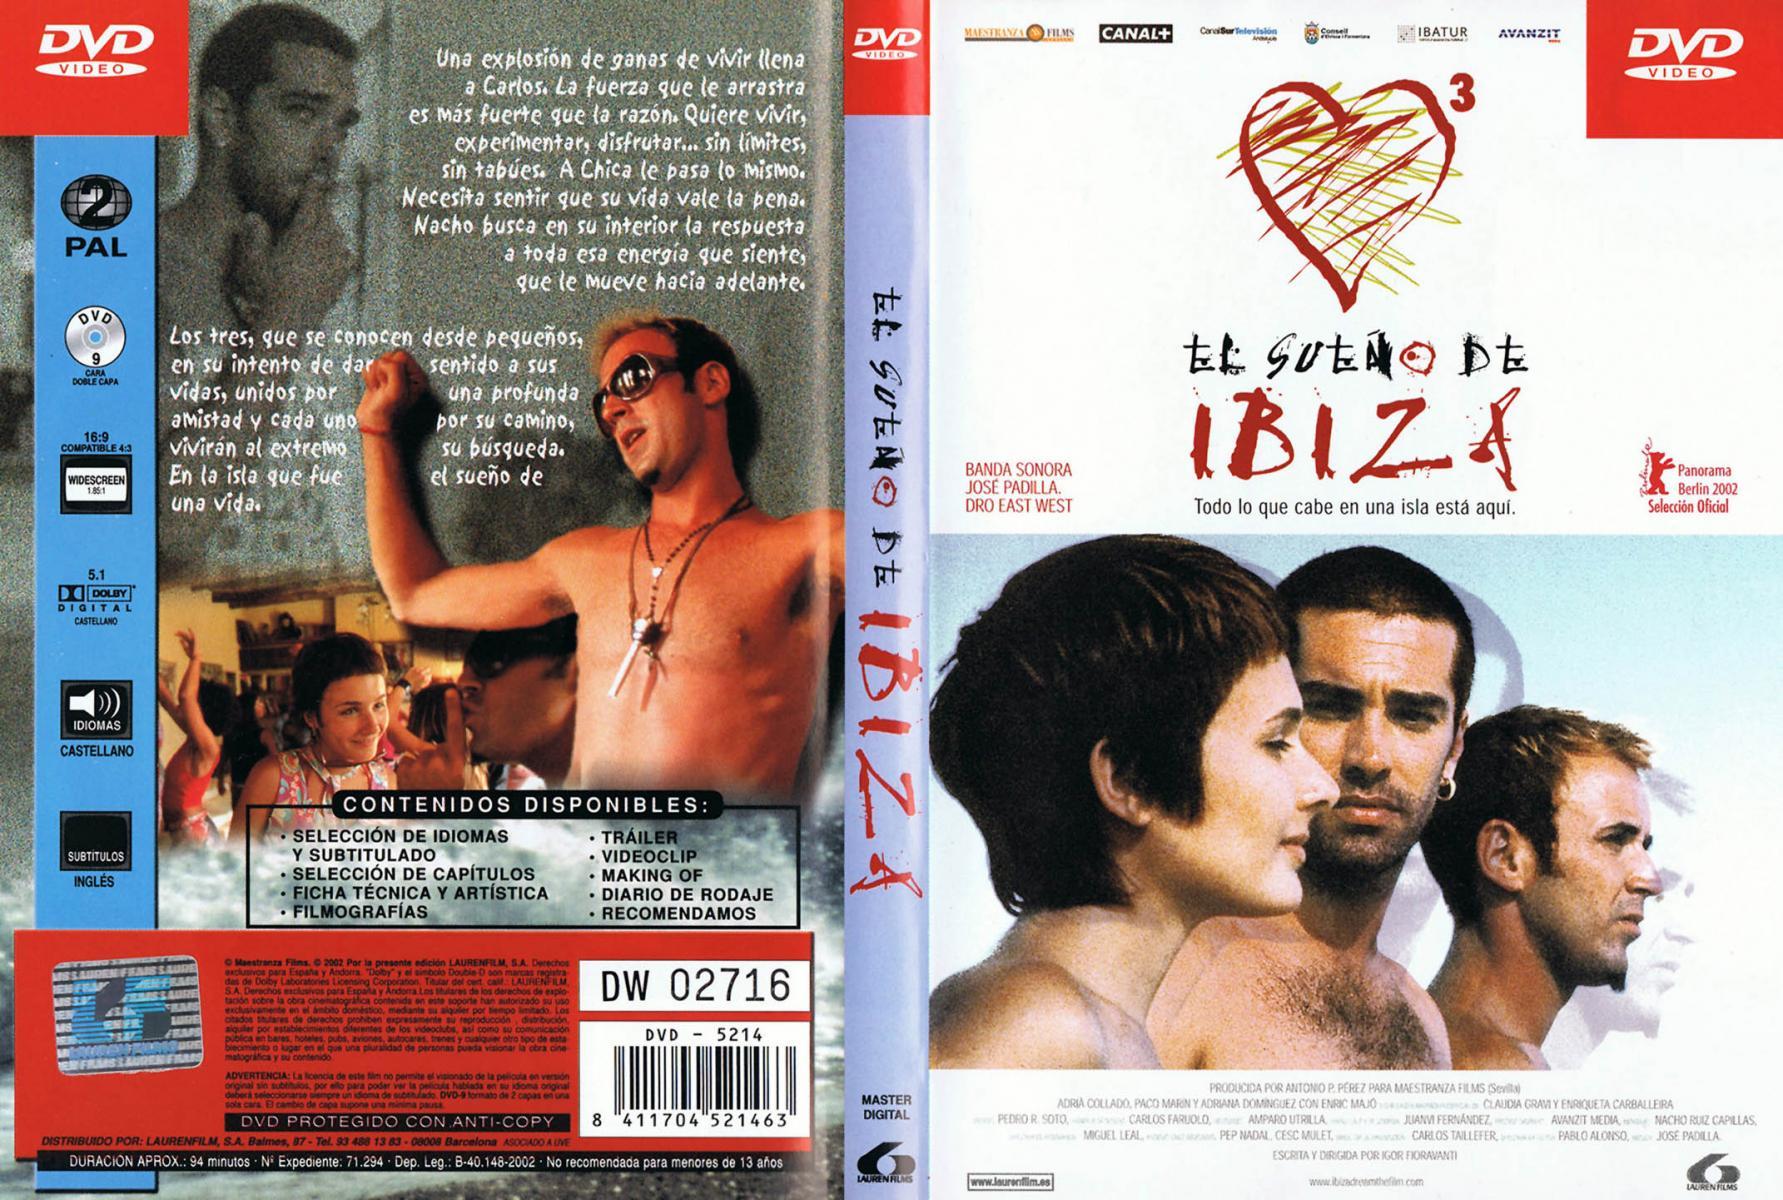 El sueno de Ibiza movie